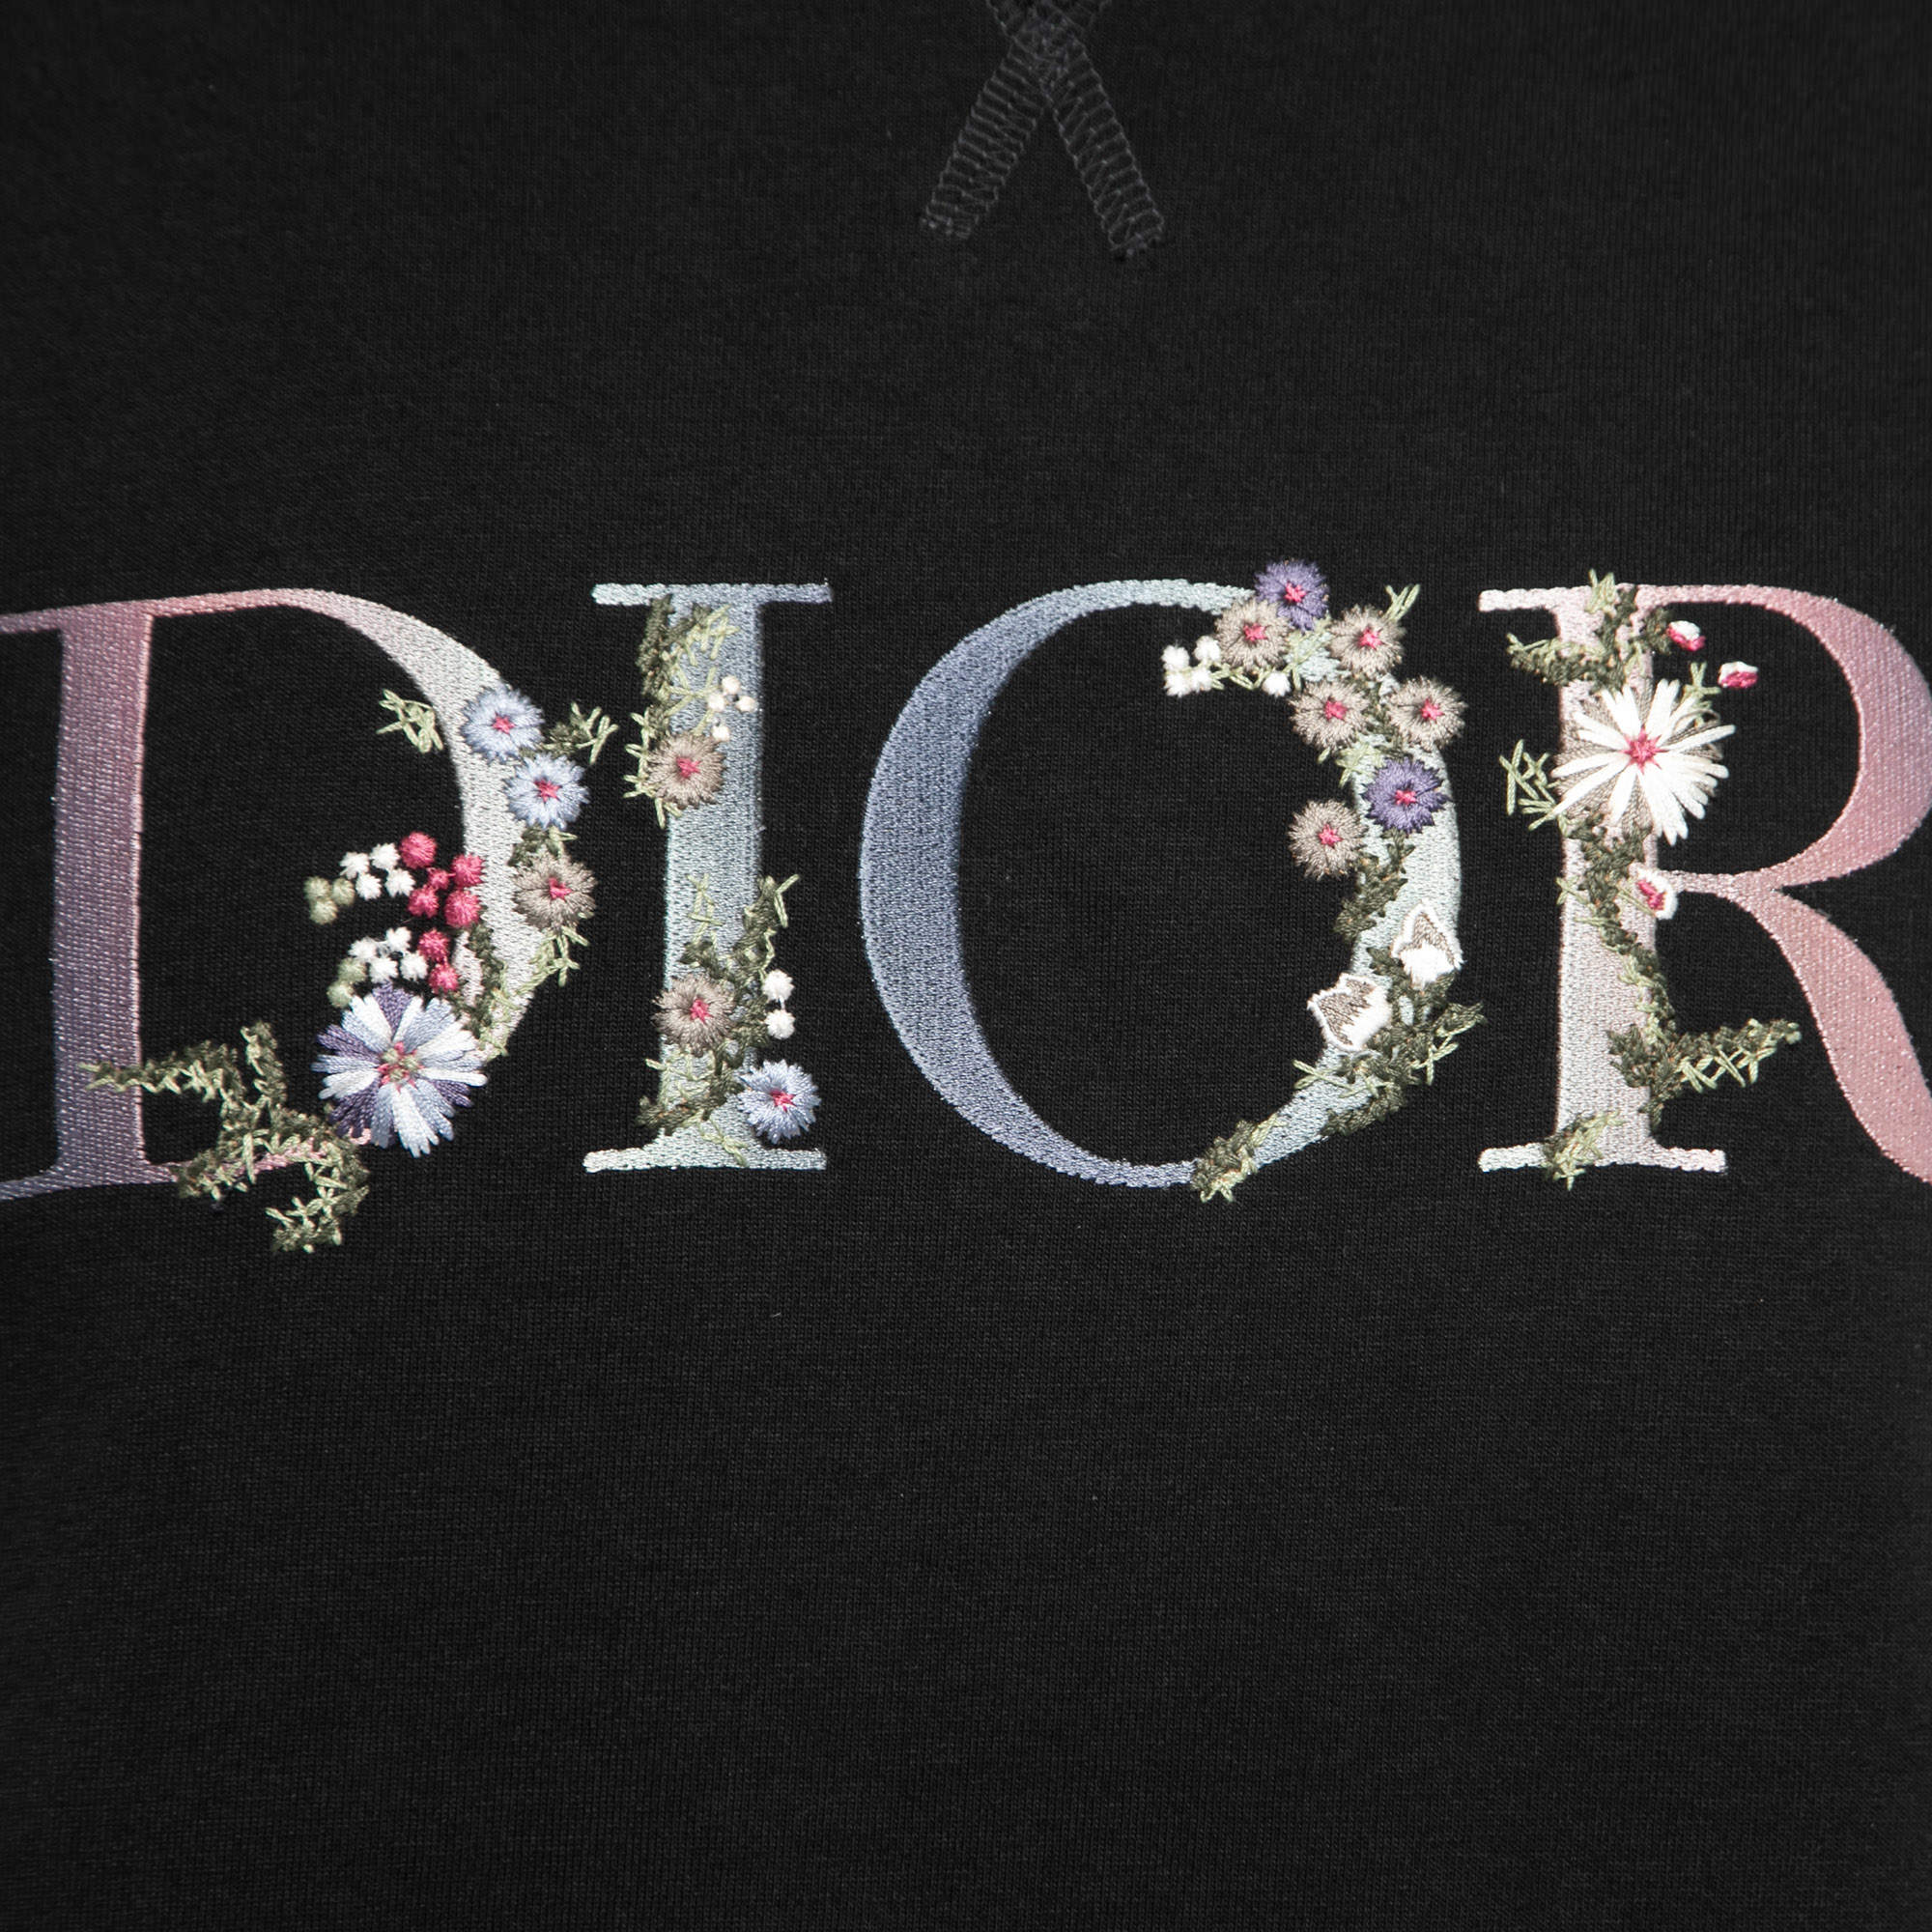 Dior Flower Logo T-shirt in Black for Men